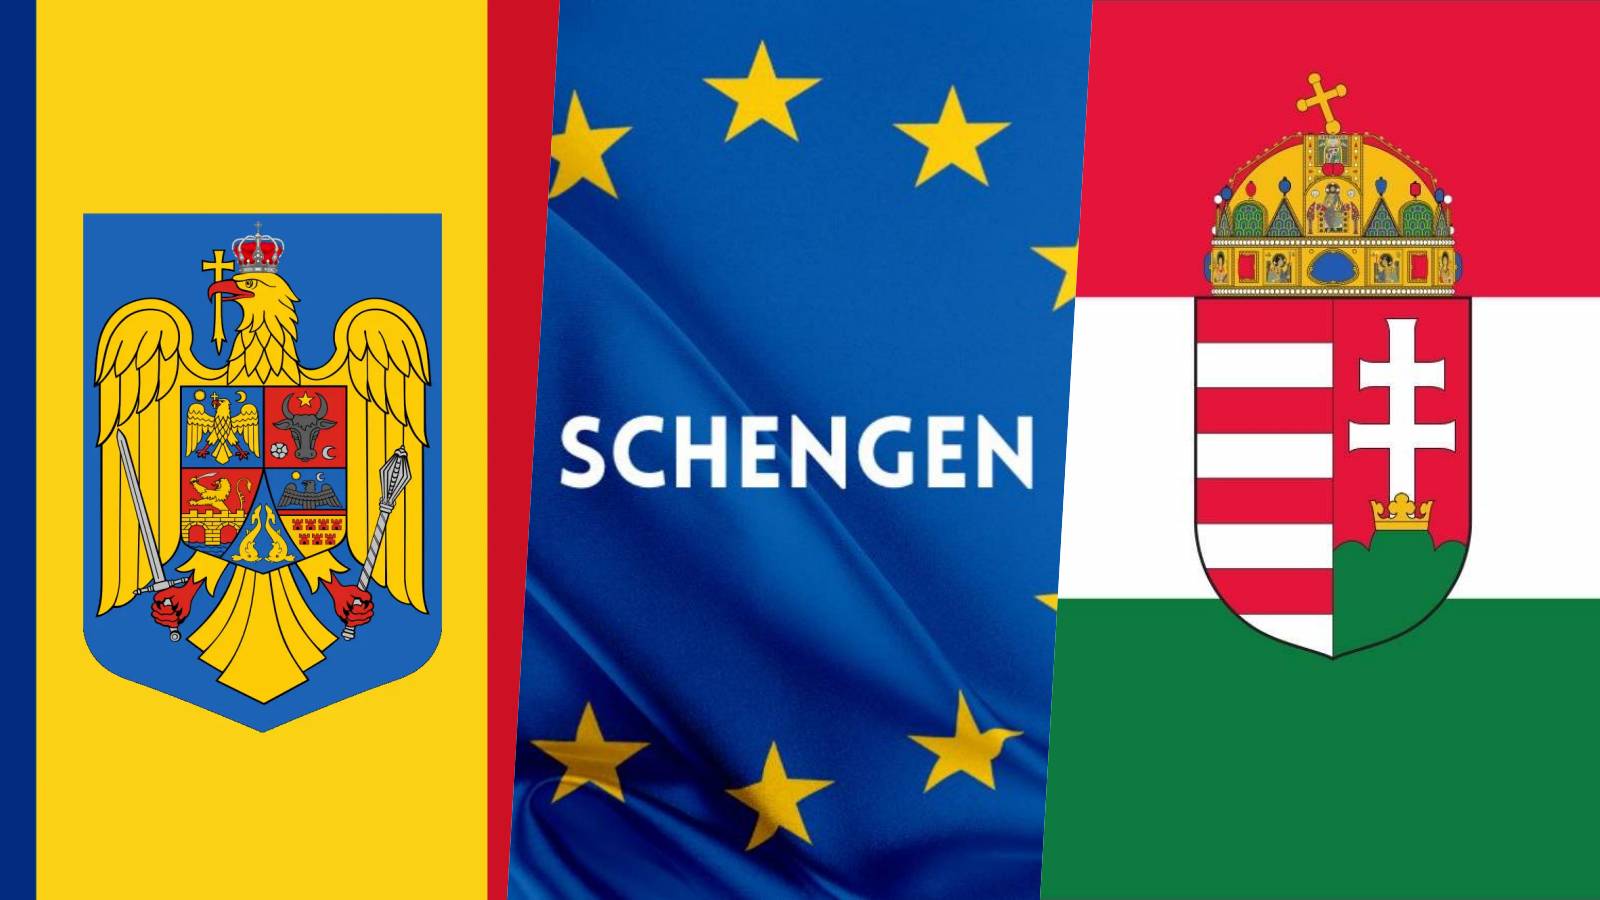 Schengenin viralliset julistukset VIIMEINEN HETKI, kun Romania liittyy Unkarin rooliin